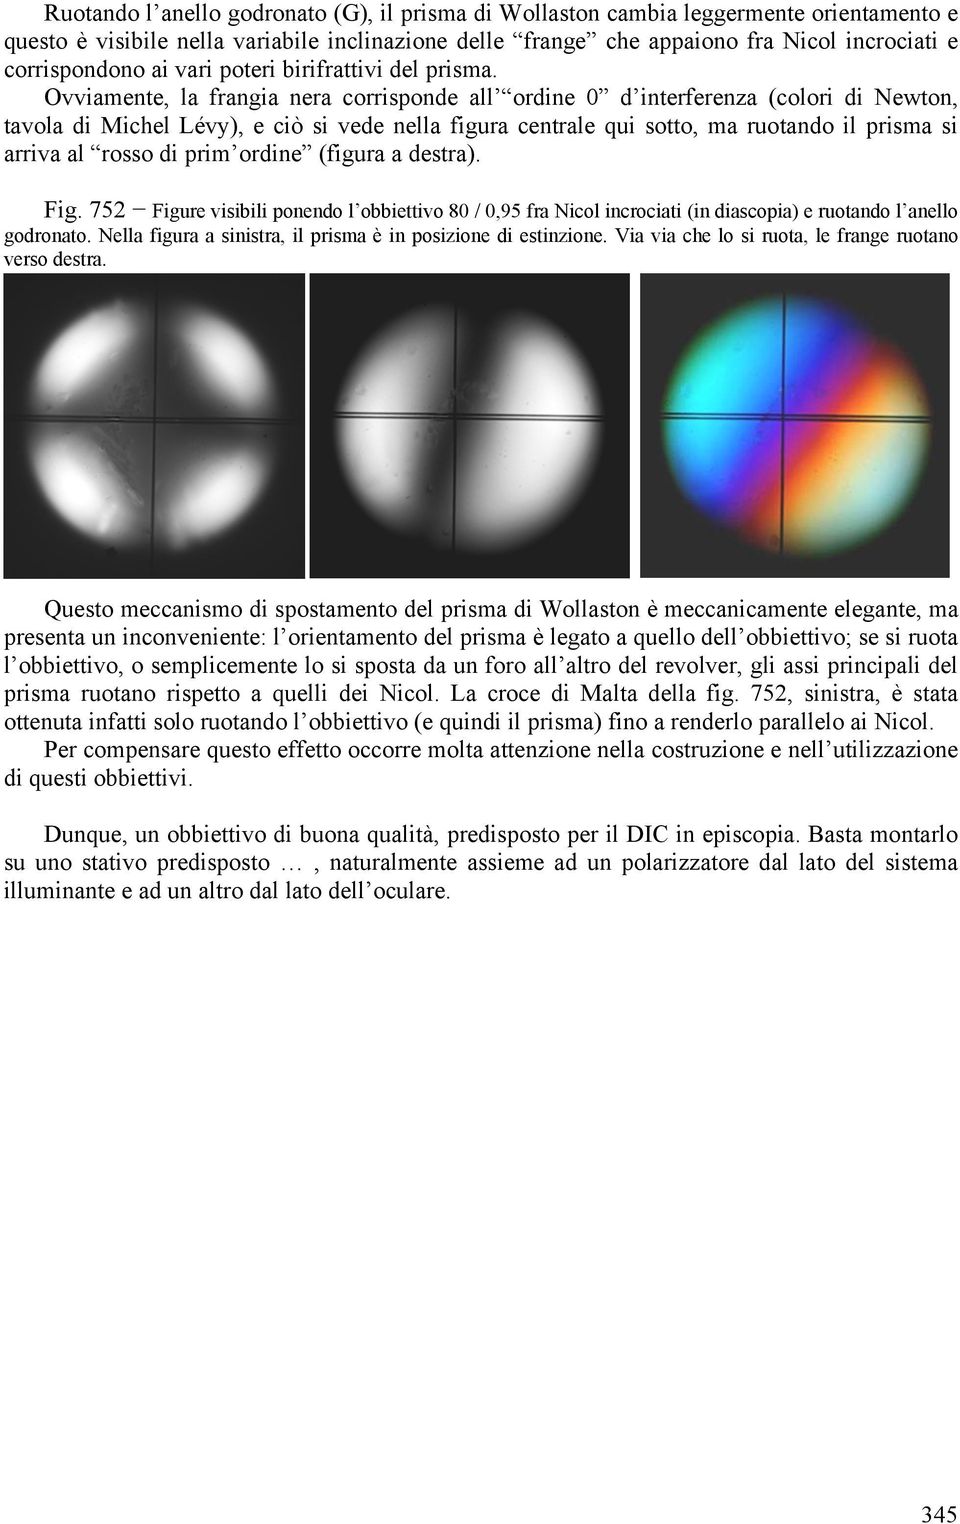 Ovviamente, la frangia nera corrisponde all ordine 0 d interferenza (colori di Newton, tavola di Michel Lévy), e ciò si vede nella figura centrale qui sotto, ma ruotando il prisma si arriva al rosso